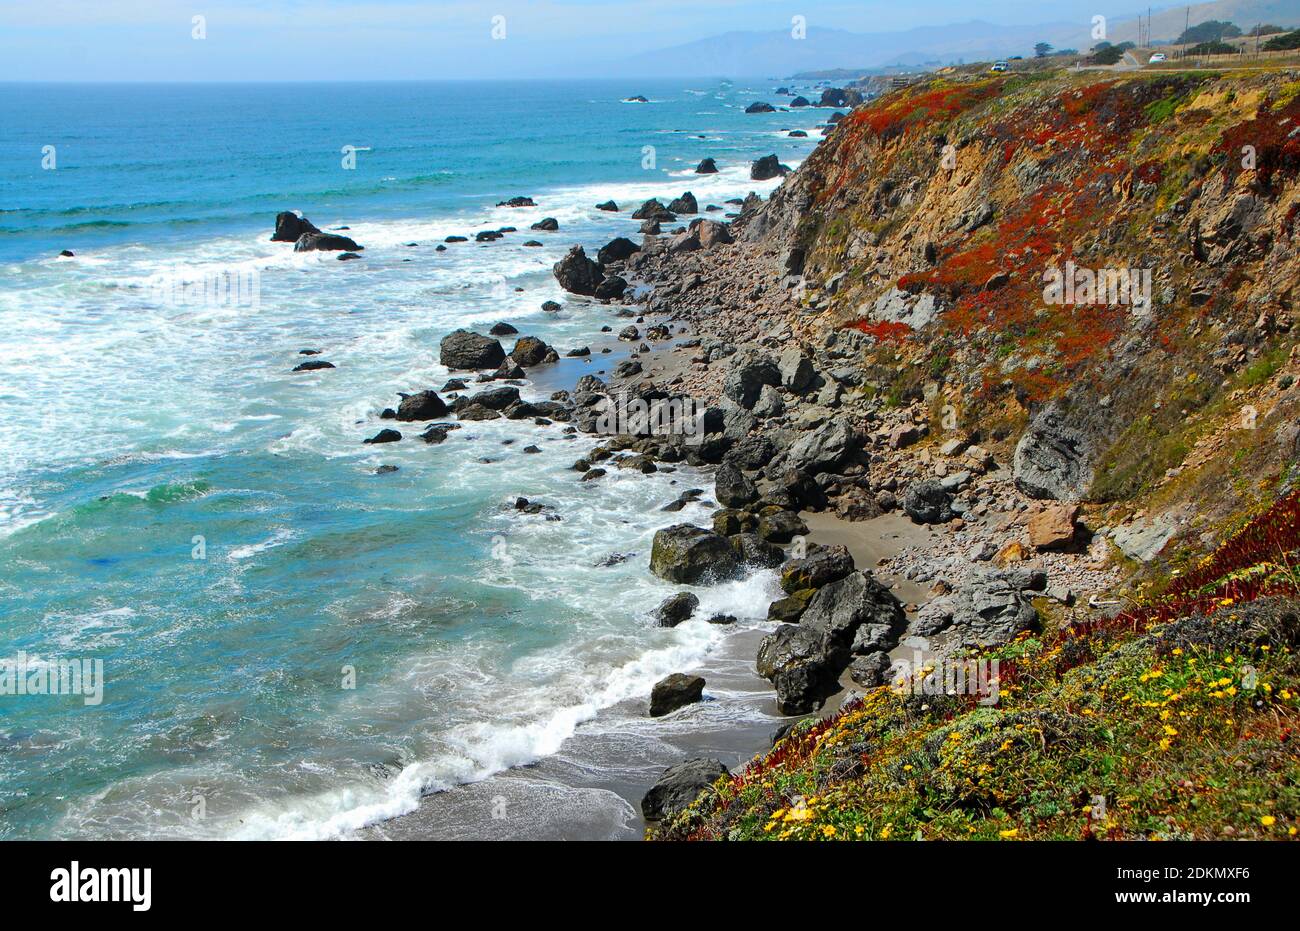 Des falaises couvertes de fleurs sauvages mènent à l'océan Pacifique et à une plage de rochers et de sable, dans le nord de la Californie, aux États-Unis. Banque D'Images